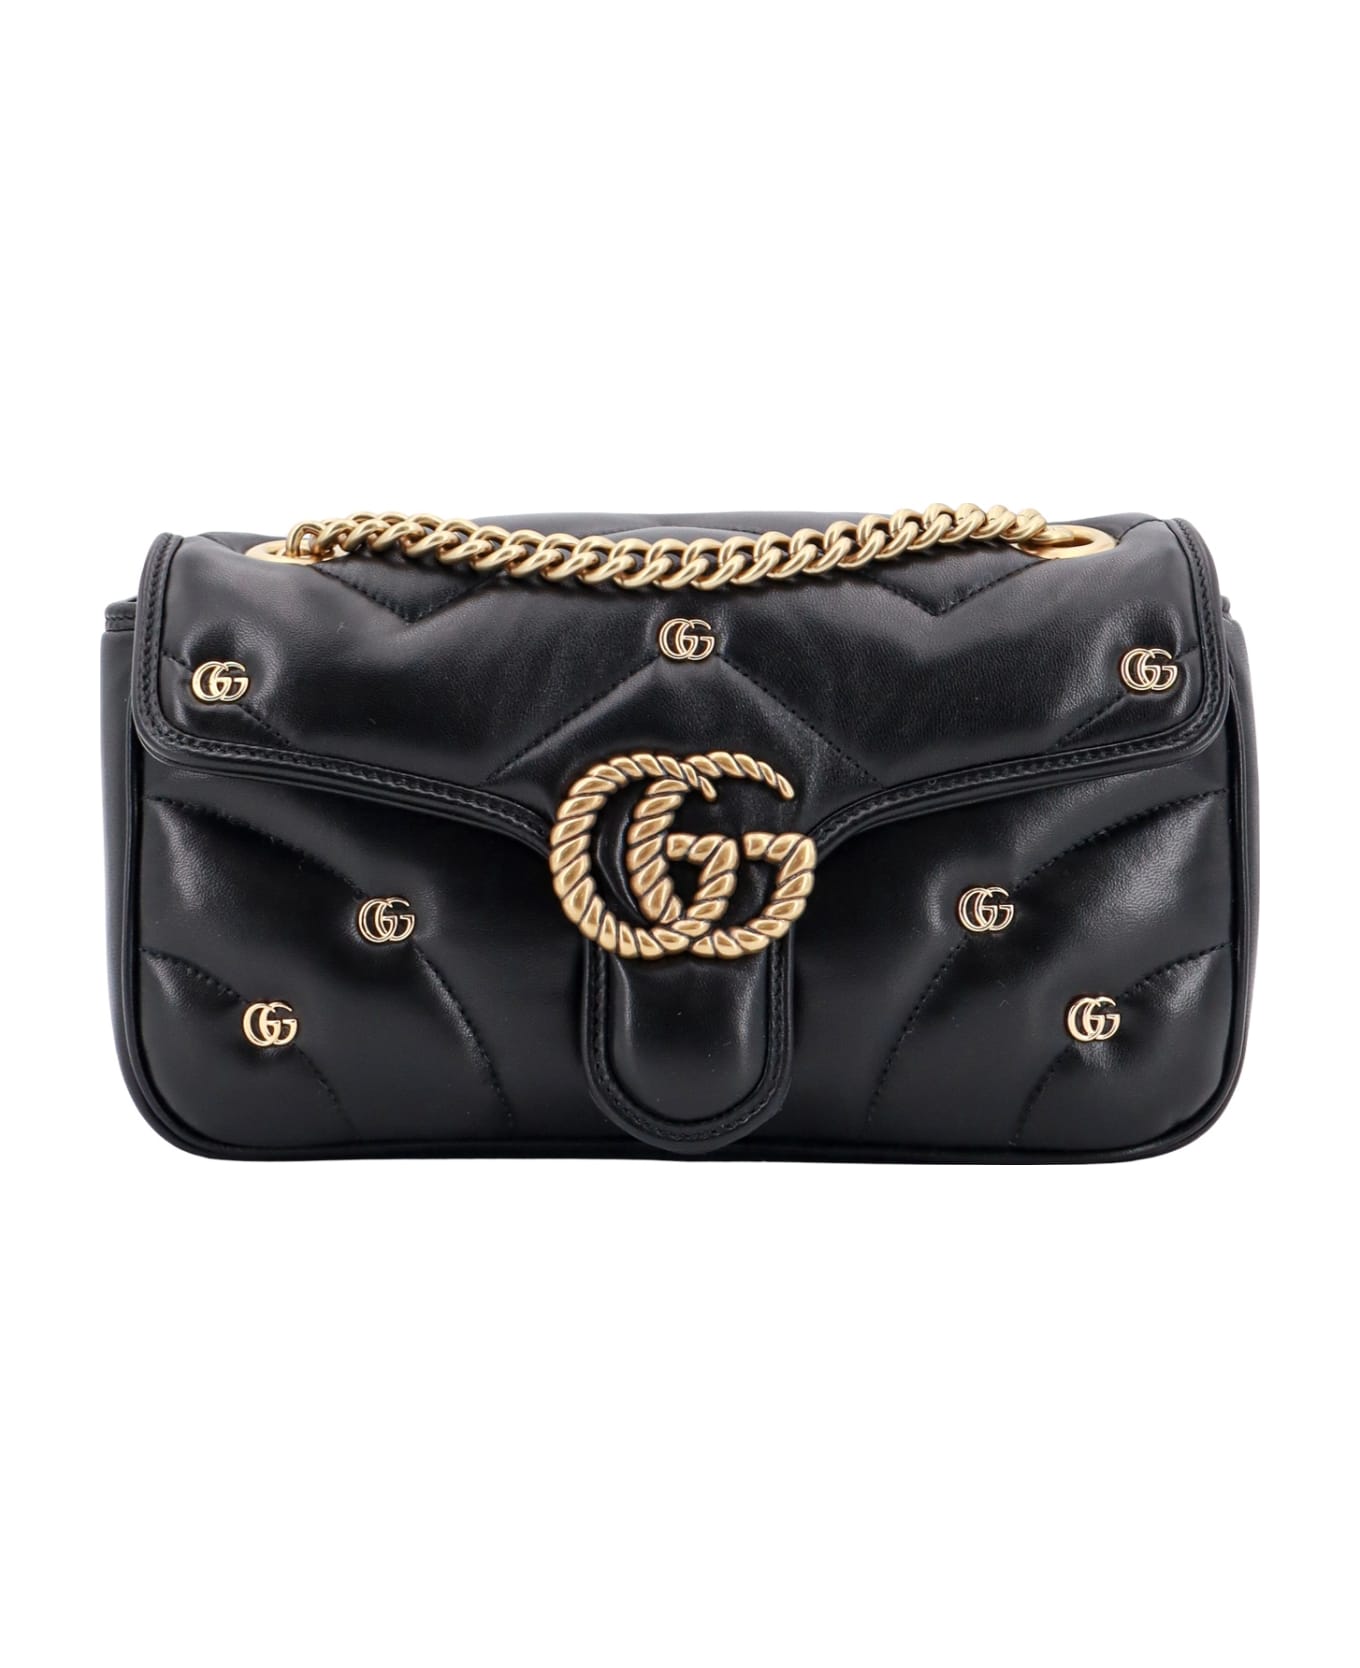 Gucci Gg Marmont Shoulder Bag - Black